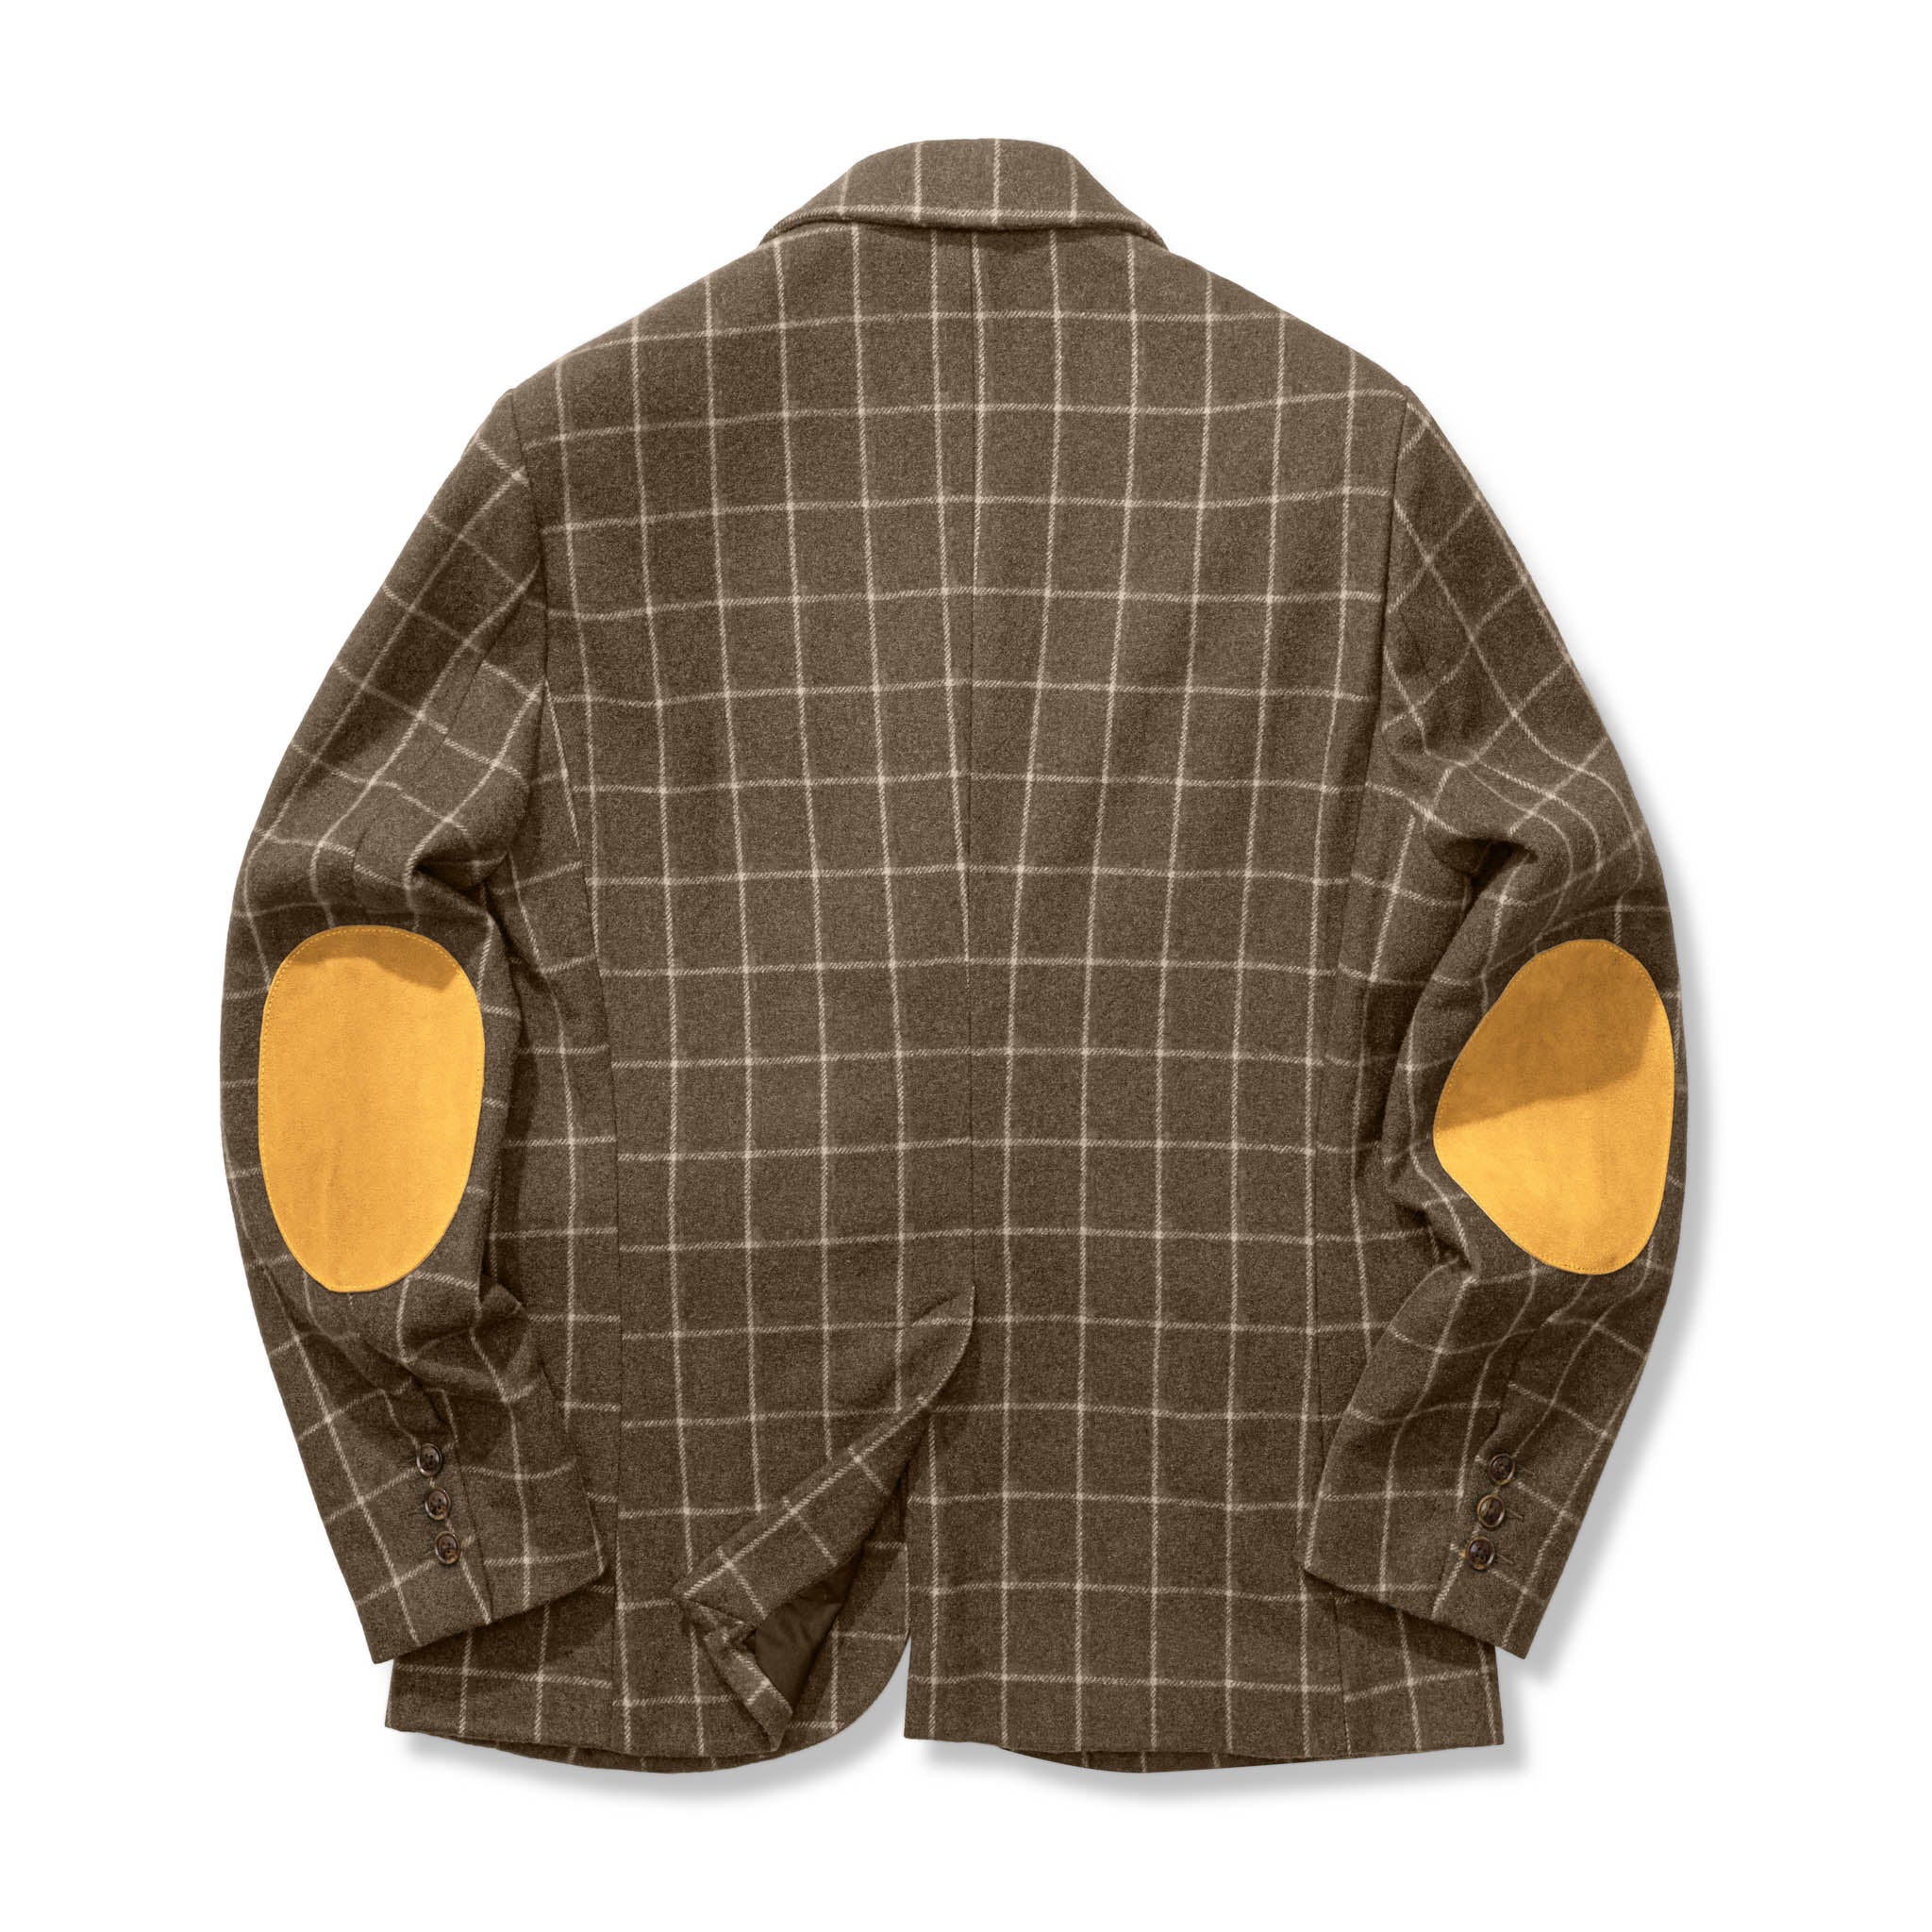 vintage】ツイード調 チェック柄 ウール テーラードジャケット